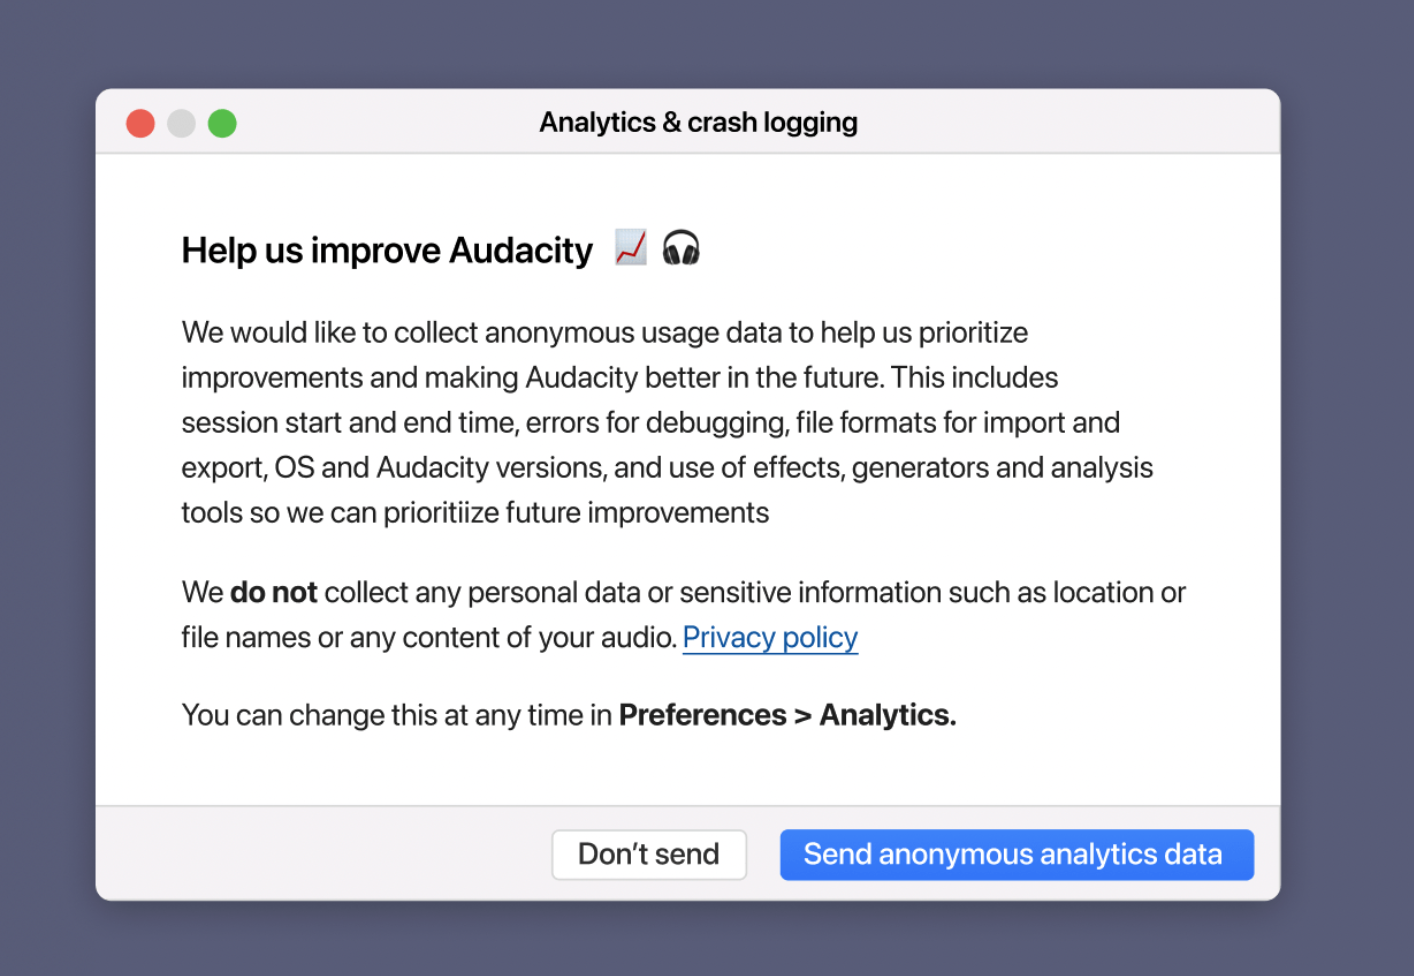 被收购后，Audacity 将收集用户数据用于改善开发